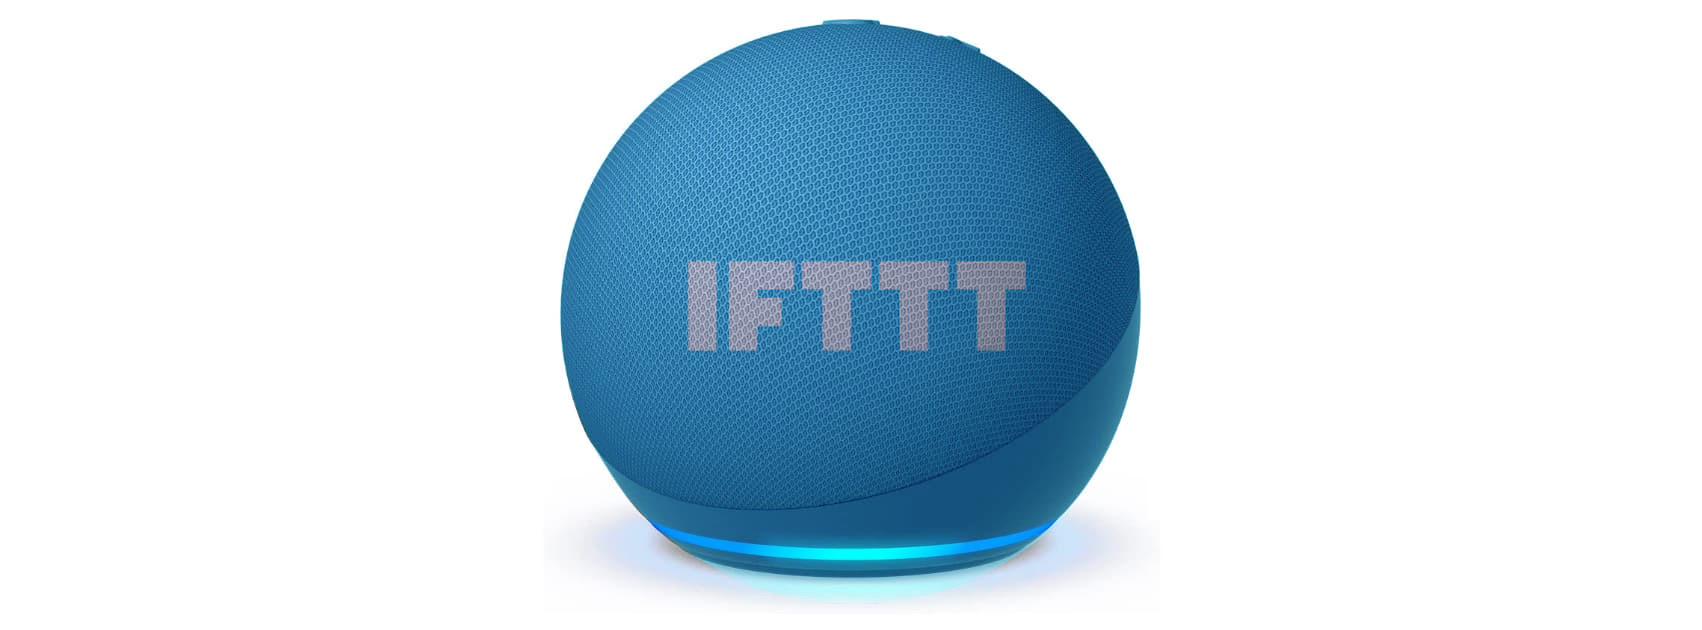 An important update to the Alexa IFTTT service - IFTTT